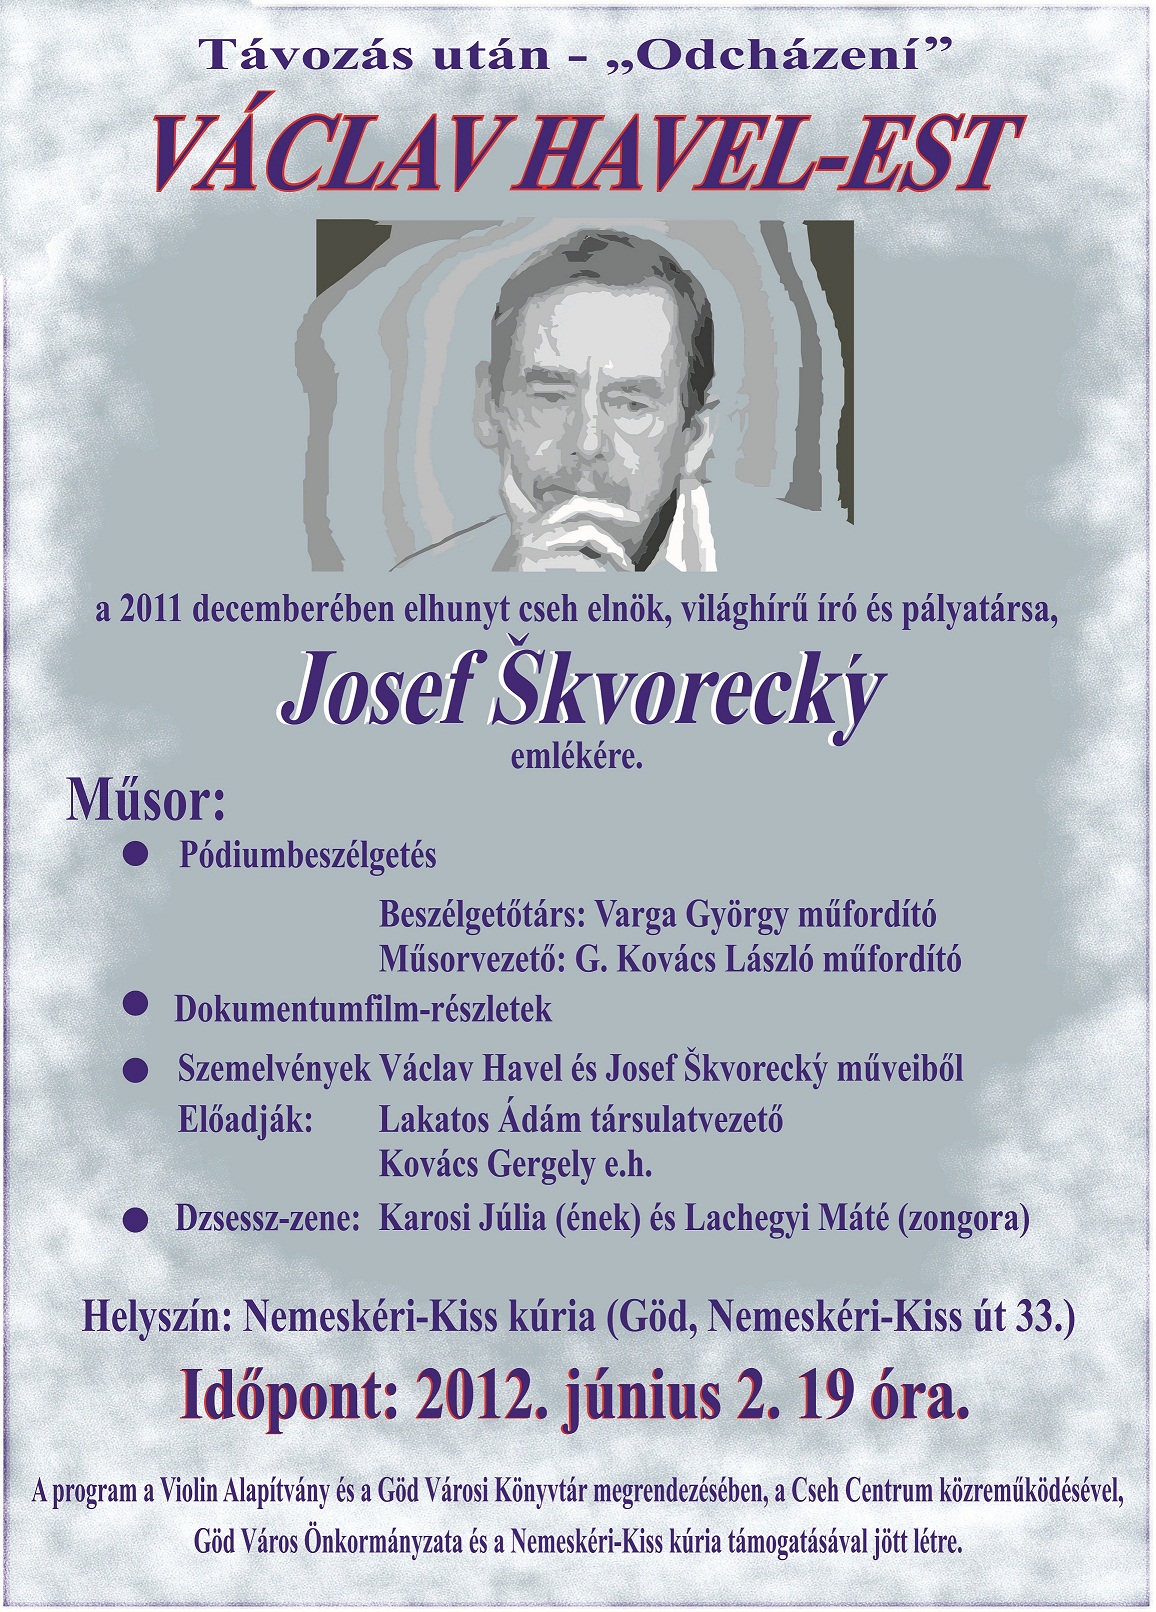 2012, Havel est plakát